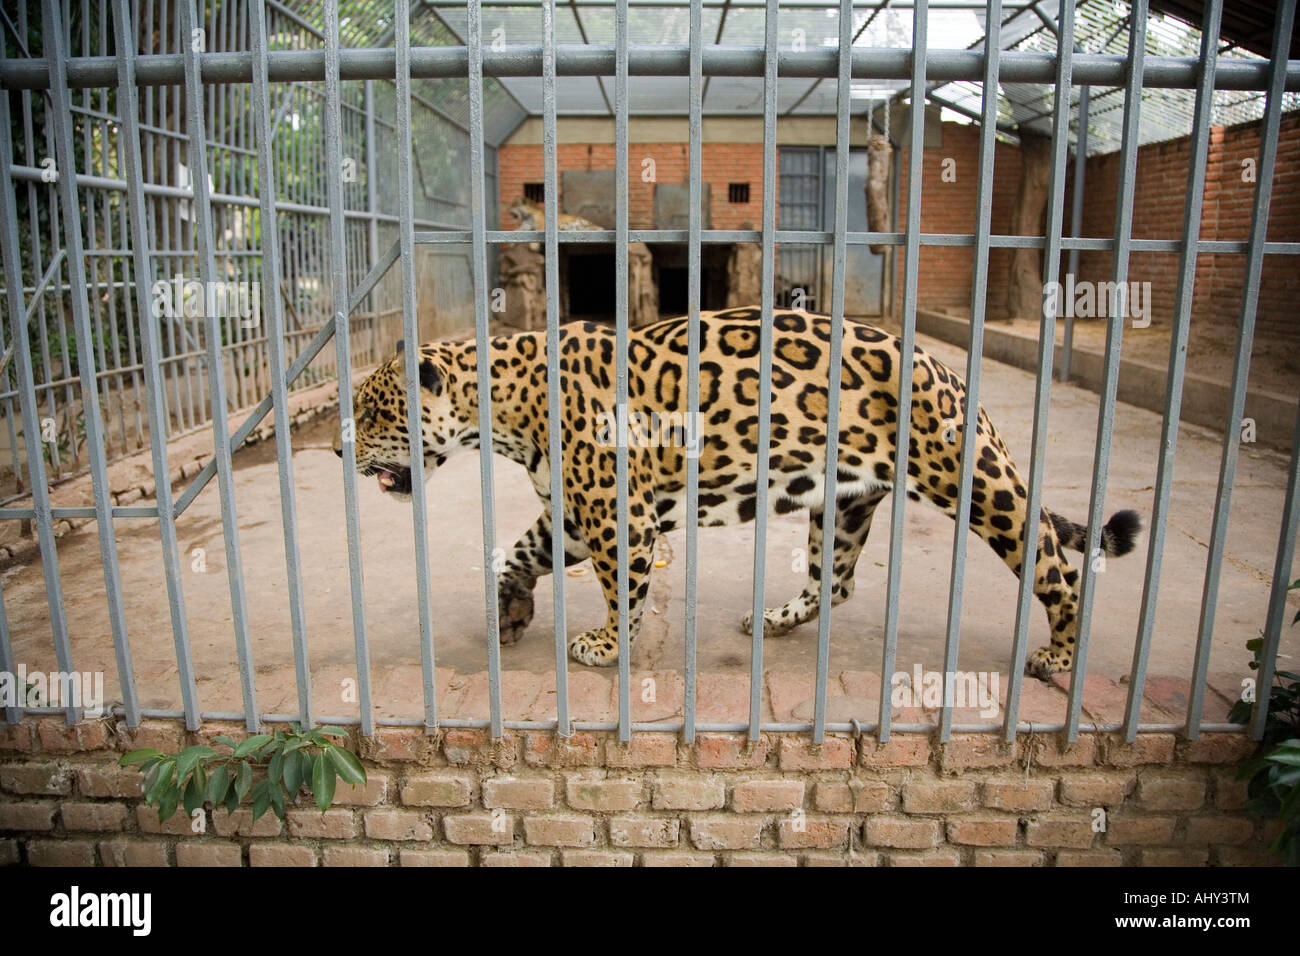 Caged animals. Вольер для леопарда. Животные Калининградского зоопарка. Пражский зоопарк животные. Клетка леопарда в Новосибирске.